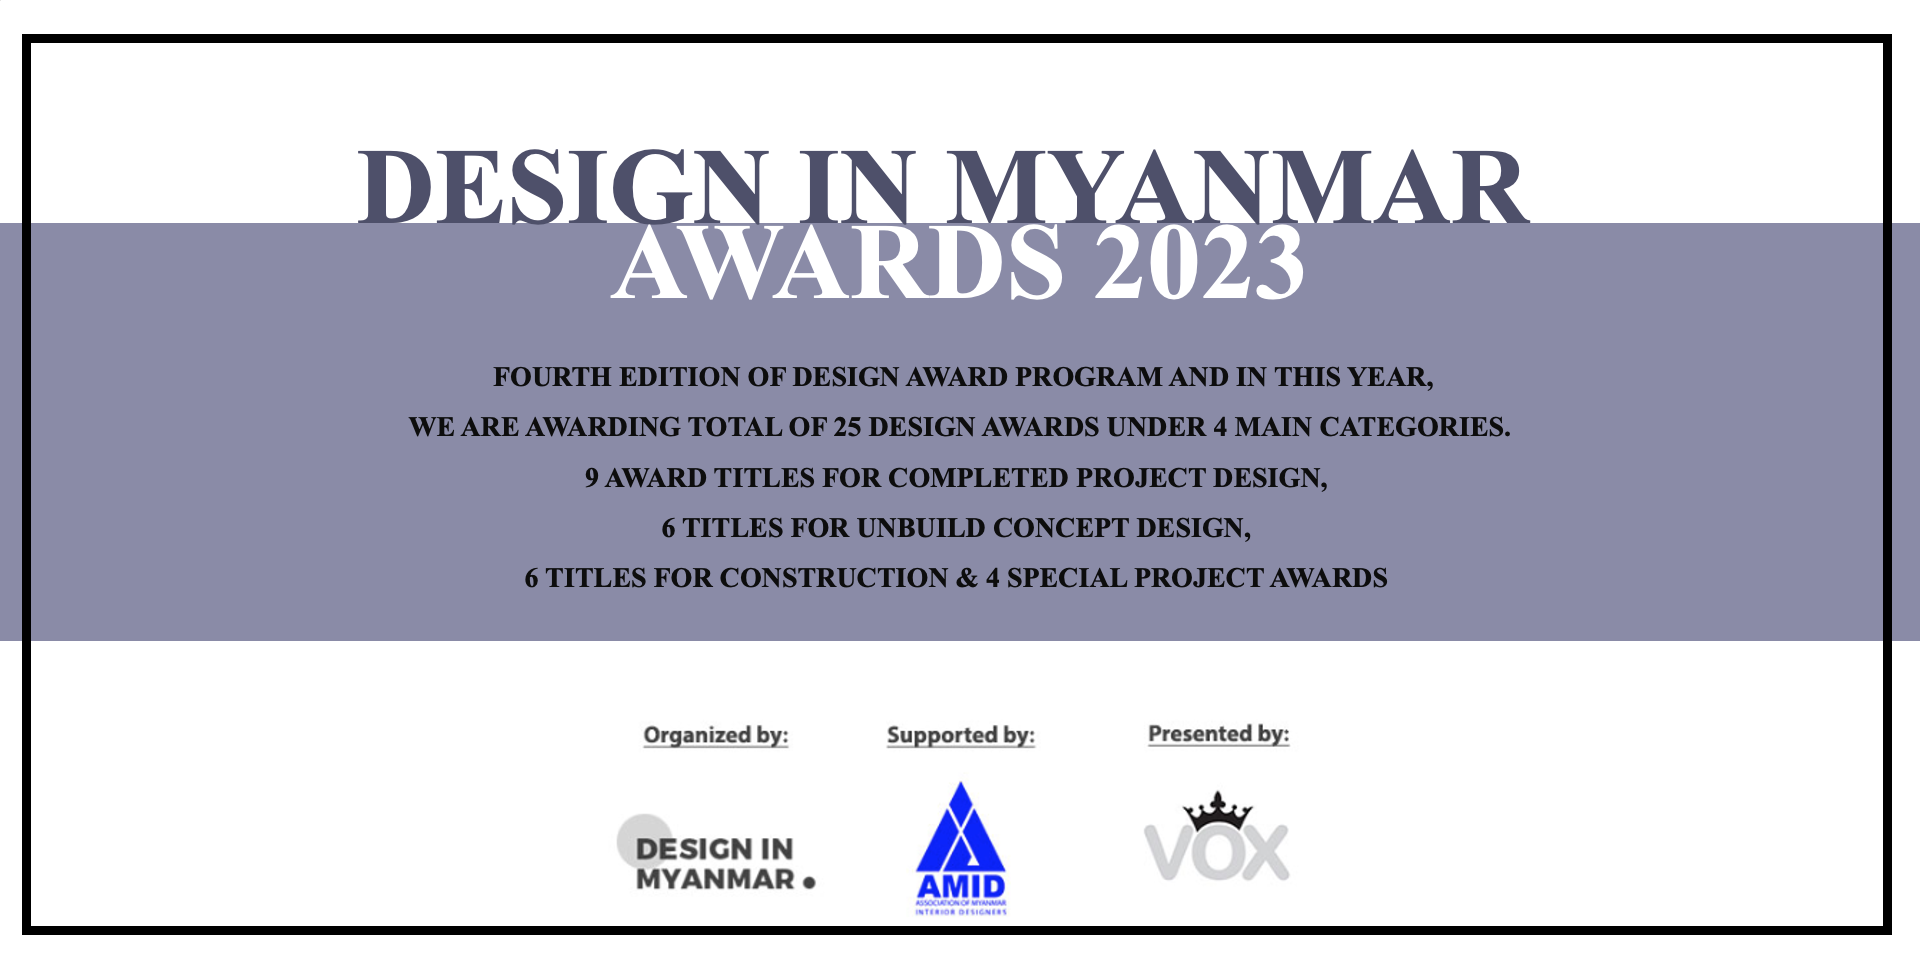 DESIGN IN MYANMAR AWARDS 2023